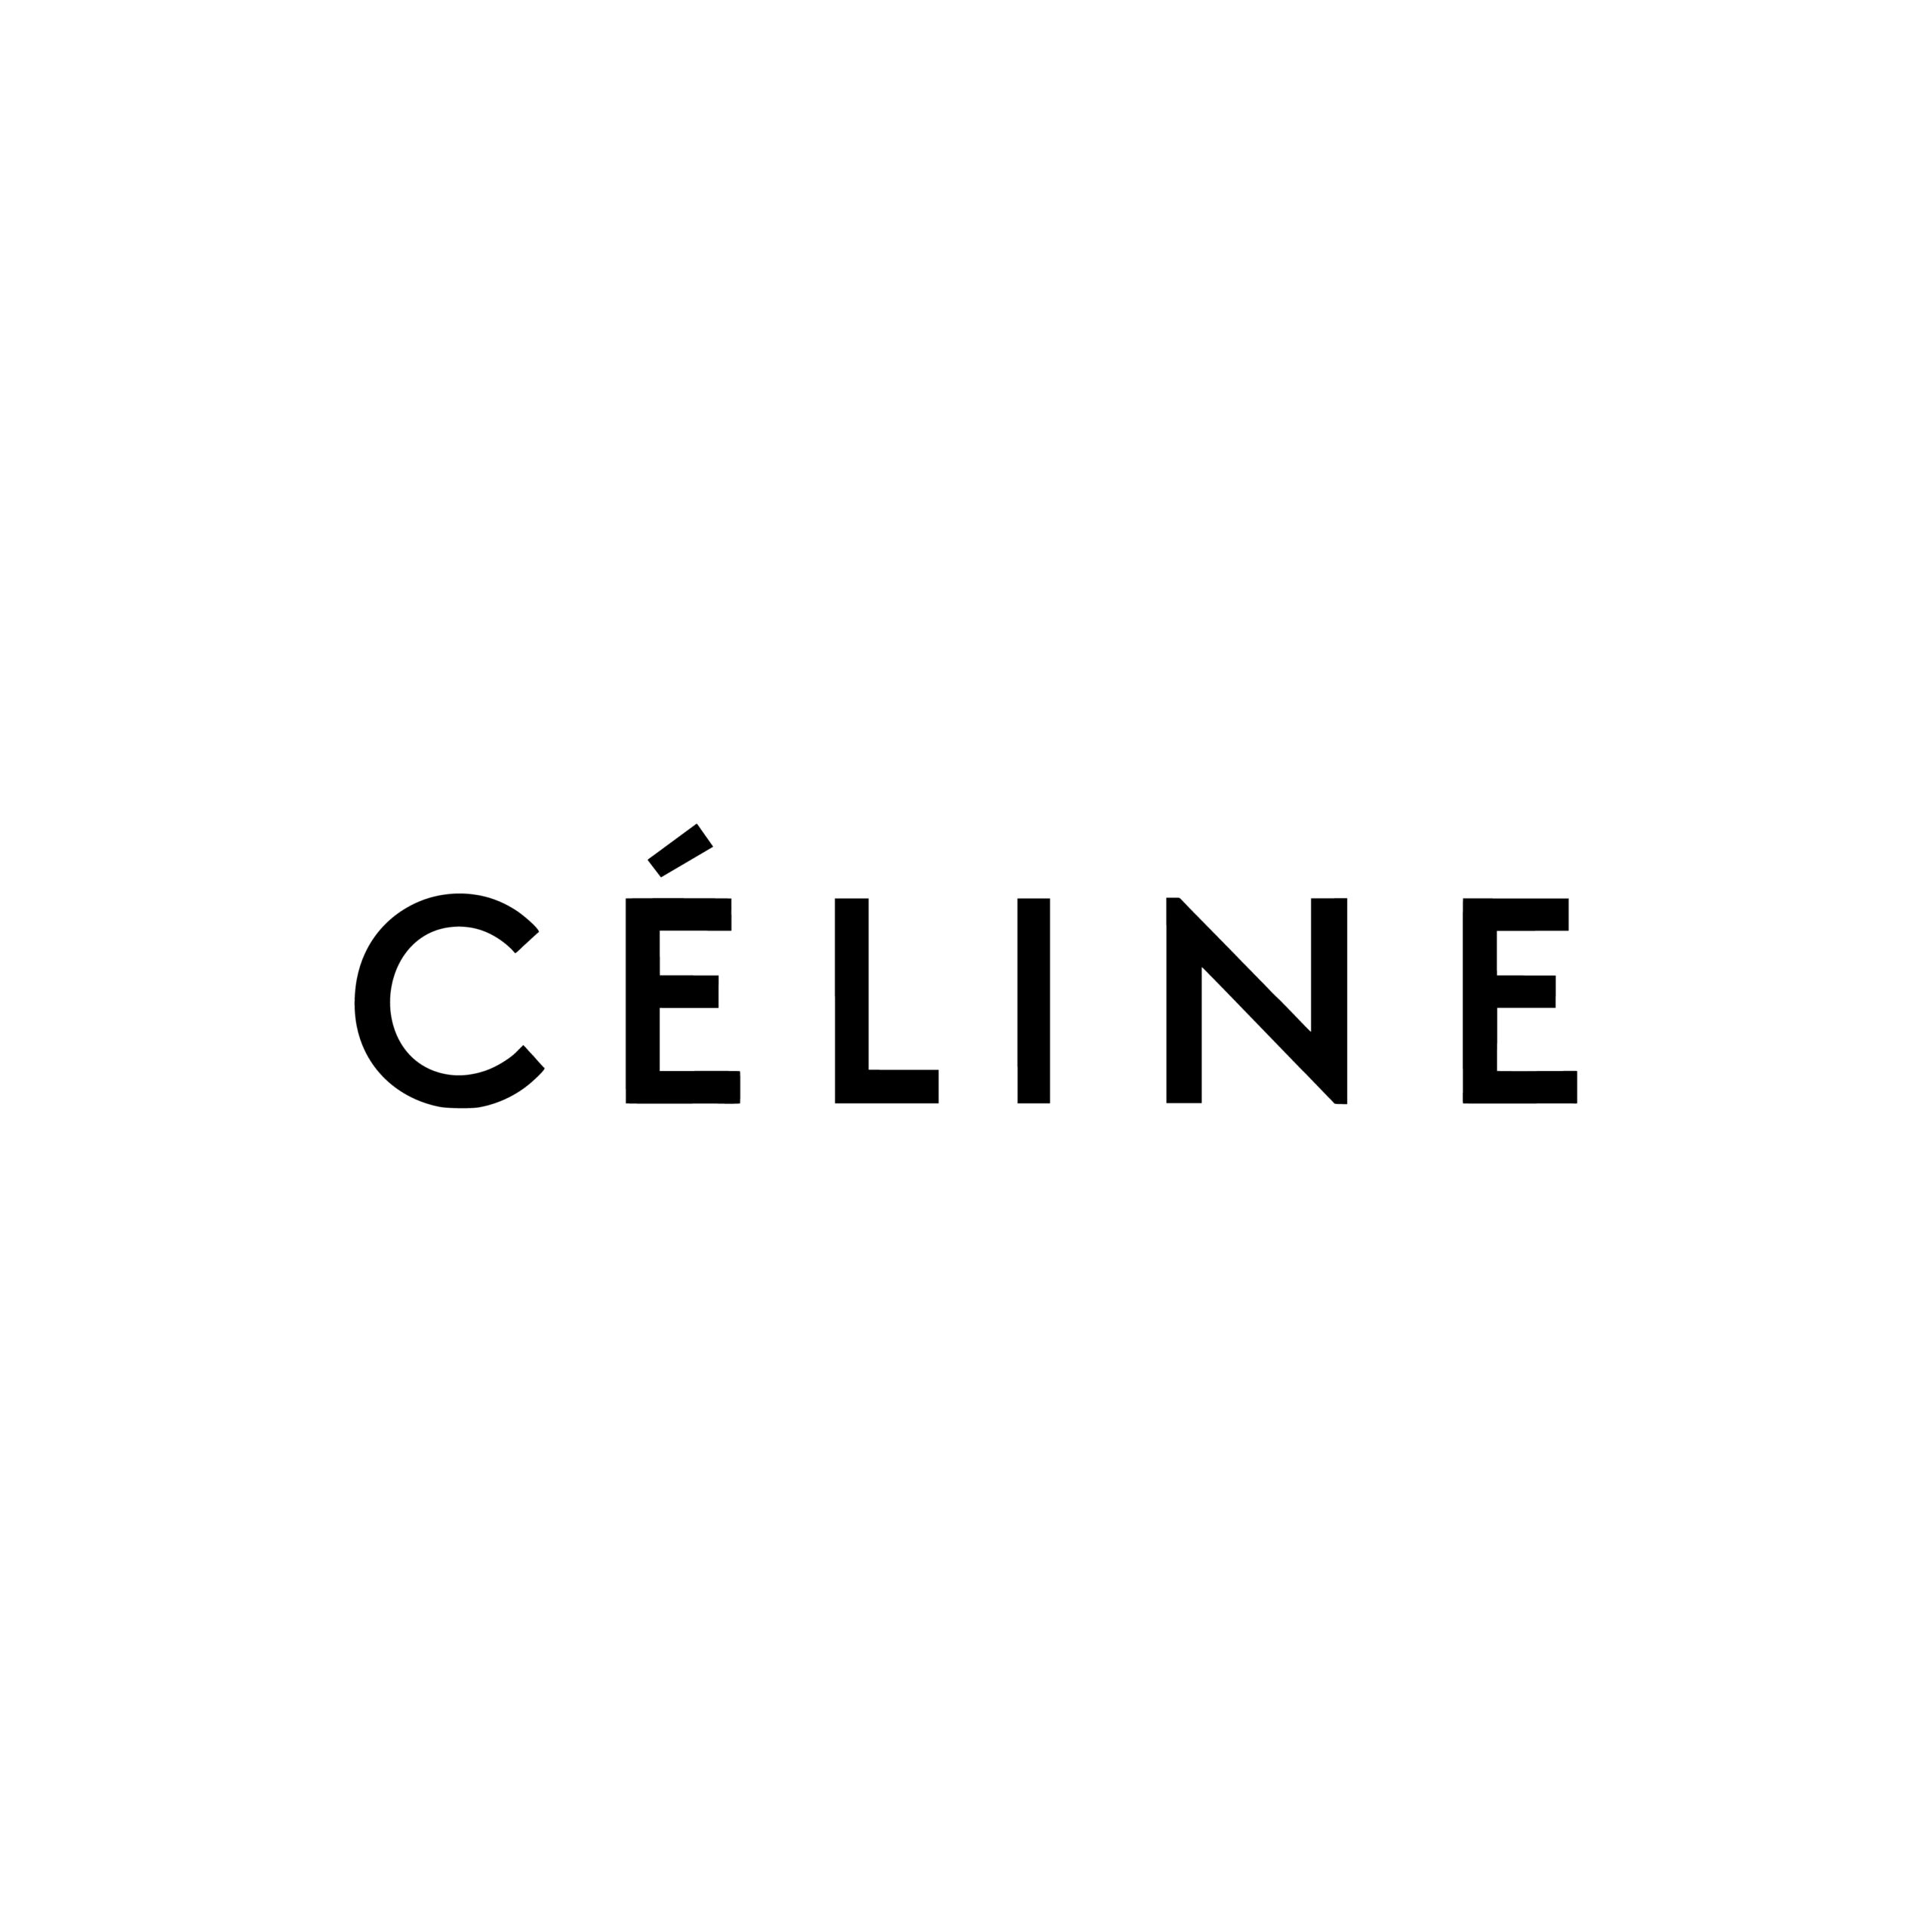 Logo Celine Vector Logo Download Free SVG Icon Worldvectorlogo ...